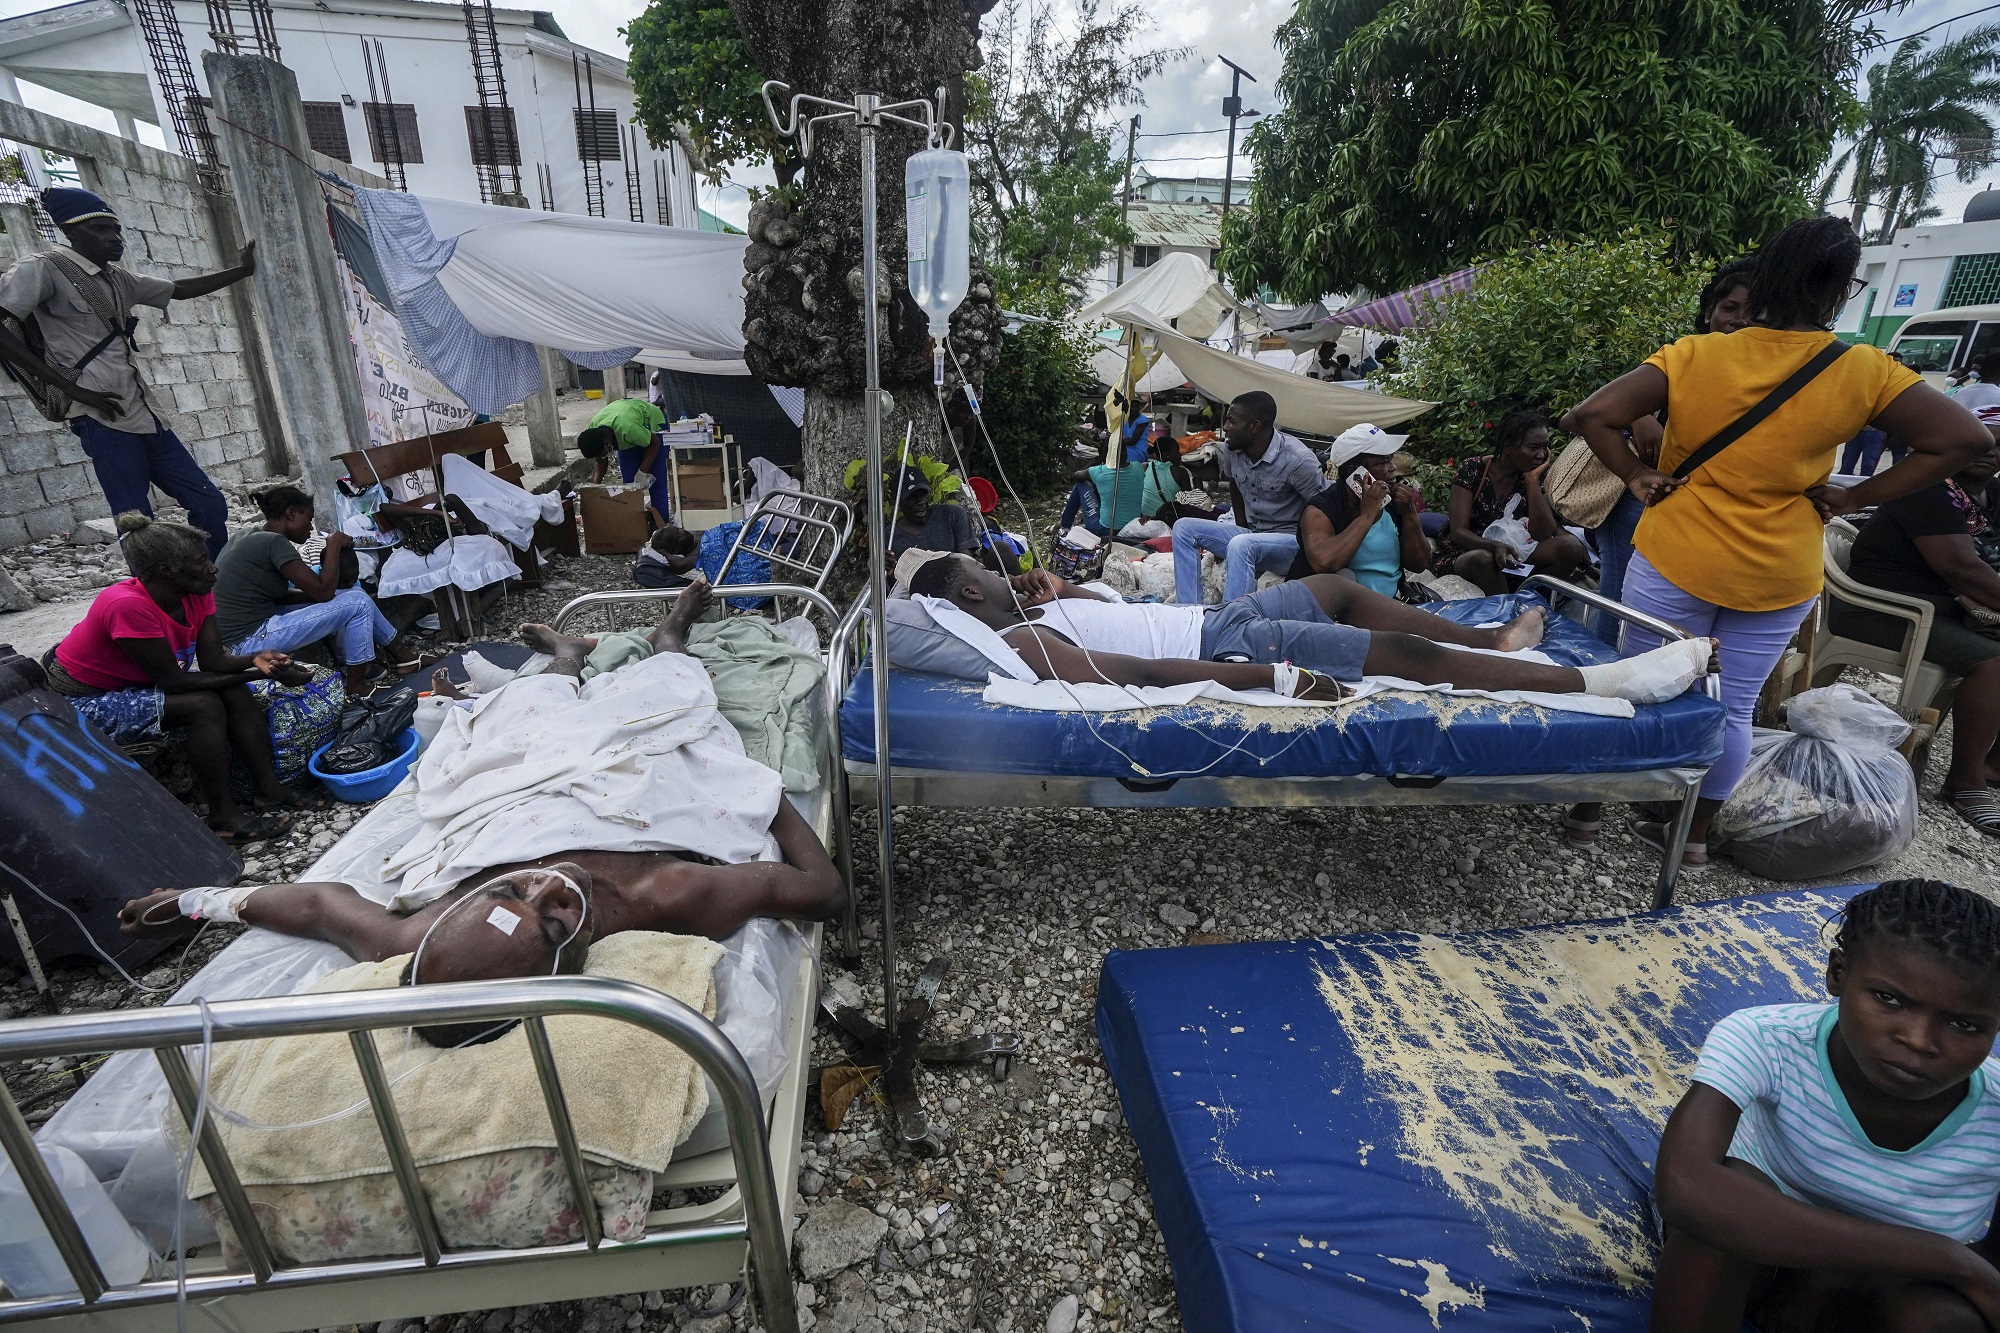 Αϊτή: Εν ψυχρώ εκτέλεση ασθενούς σε νοσοκομείο από ενόπλους εισβολείς